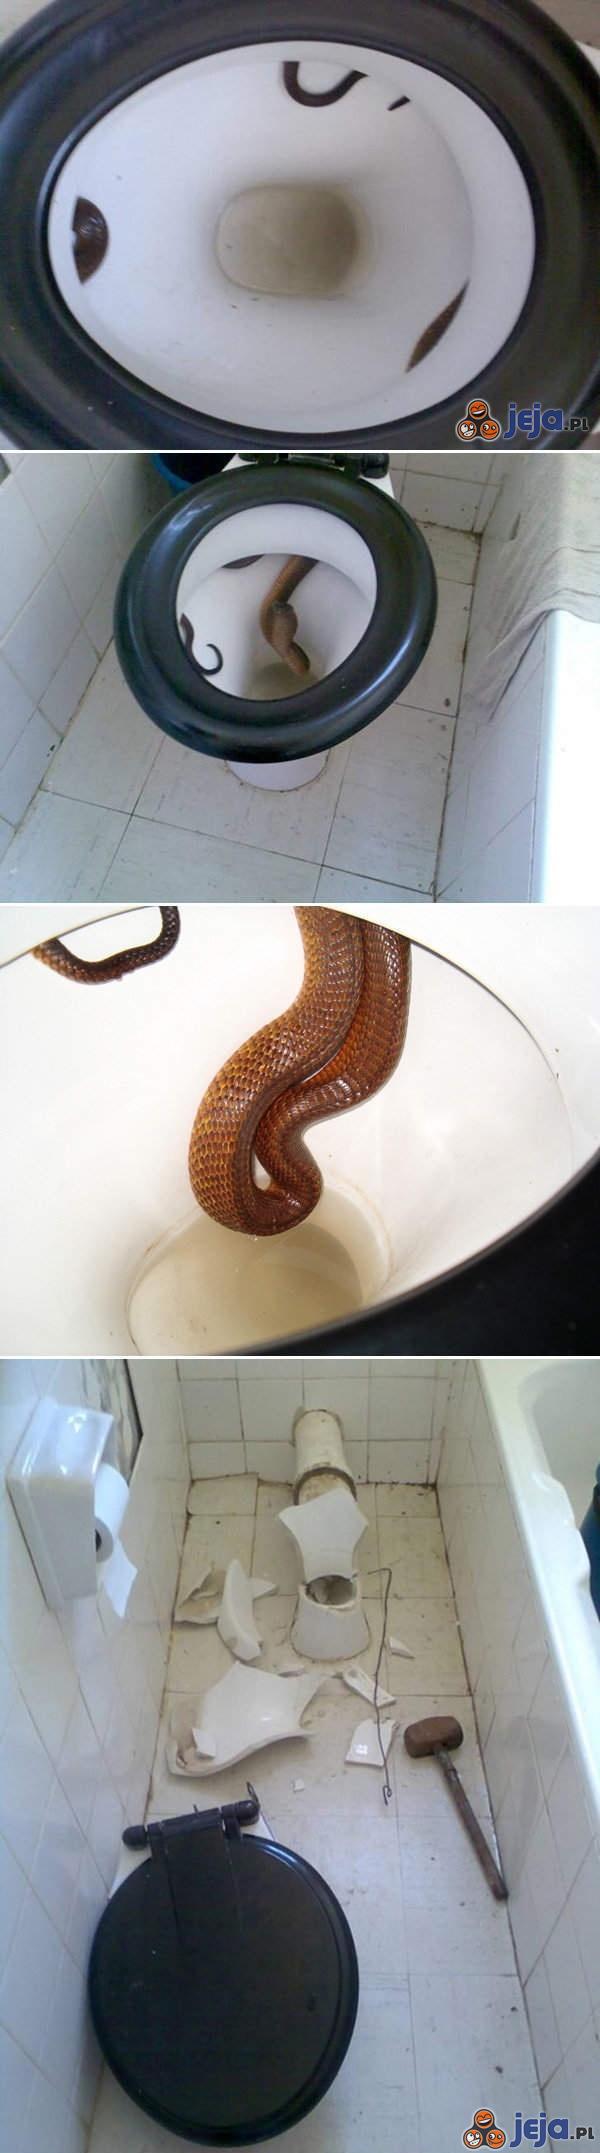 Sposób na węża w toalecie